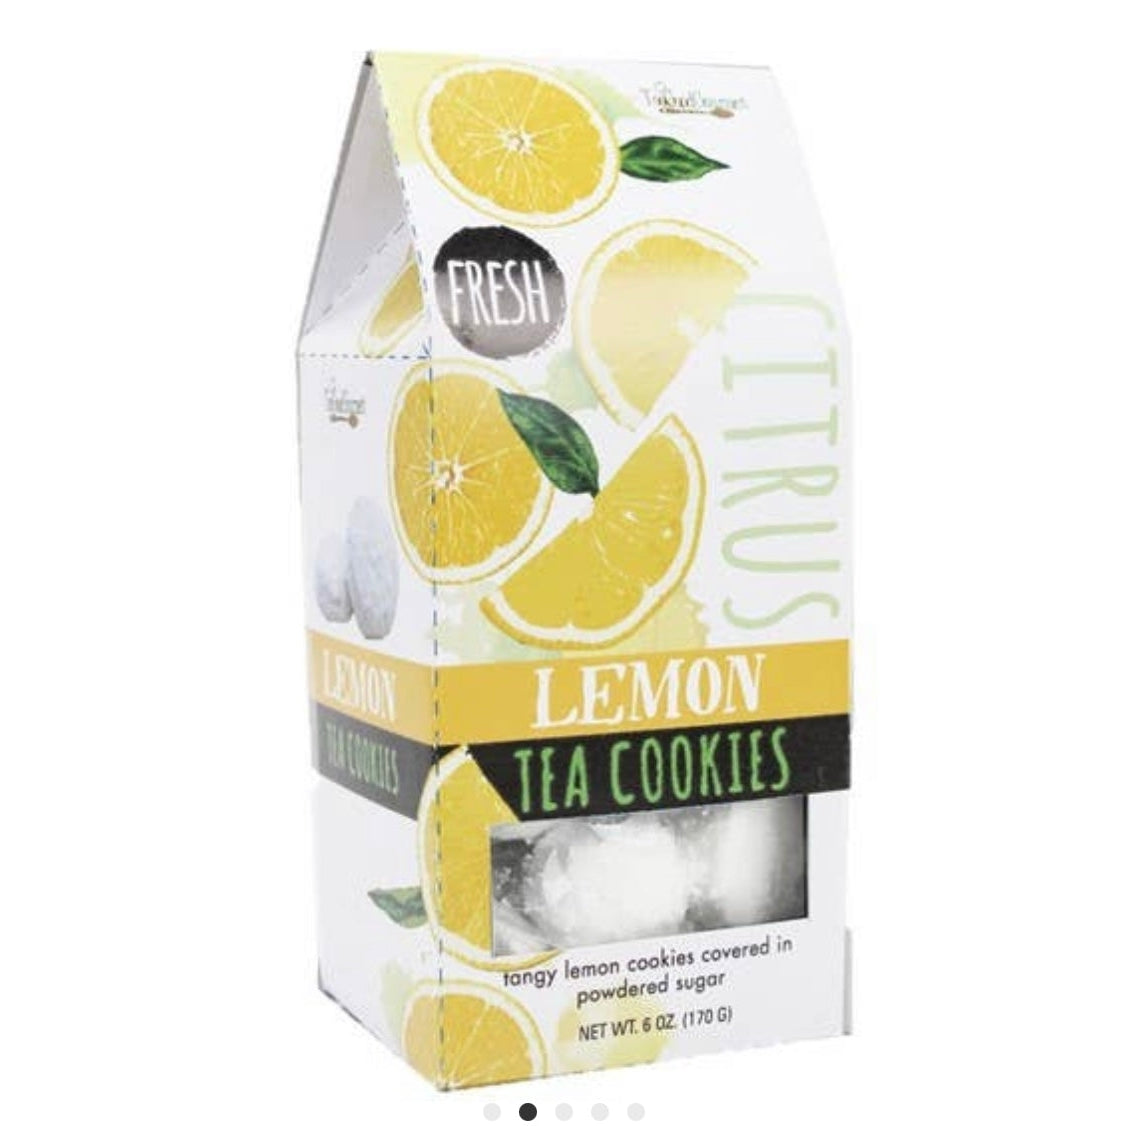 Tea Cookie Refreshers - 6 oz. Packages - Lemon & Lavender